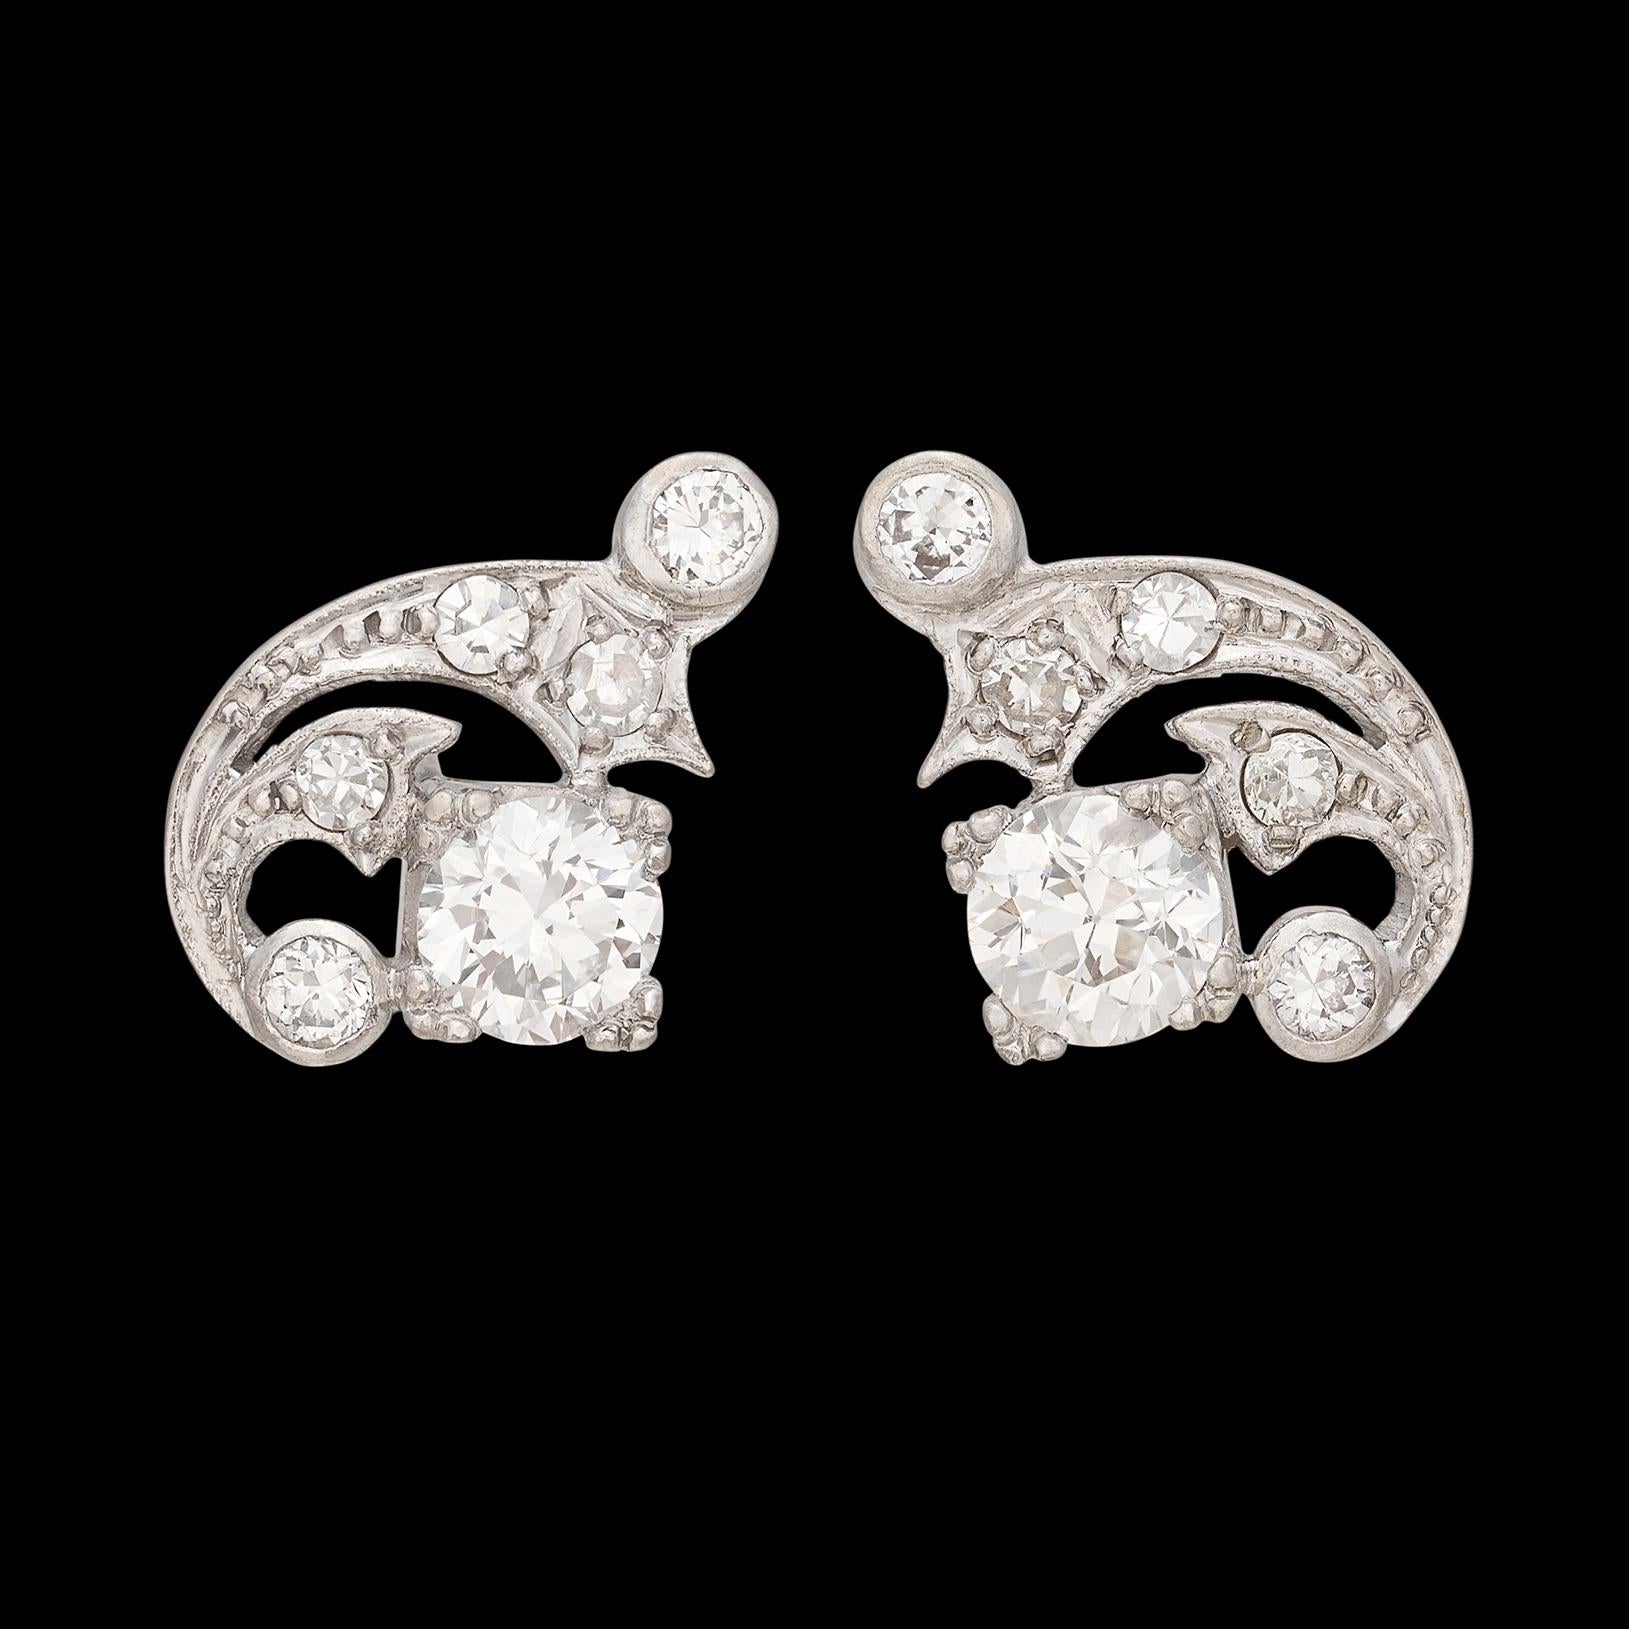 Zwei Diamanten im alten europäischen Schliff stehen im Mittelpunkt dieser außergewöhnlichen Art-Déco-Diamantohrringe. Die beiden zentralen Old-Euro-Diamanten wiegen 1,15 Karat, weitere 10 runde Diamanten sorgen für 0,60 Karat mehr Gewicht. Die